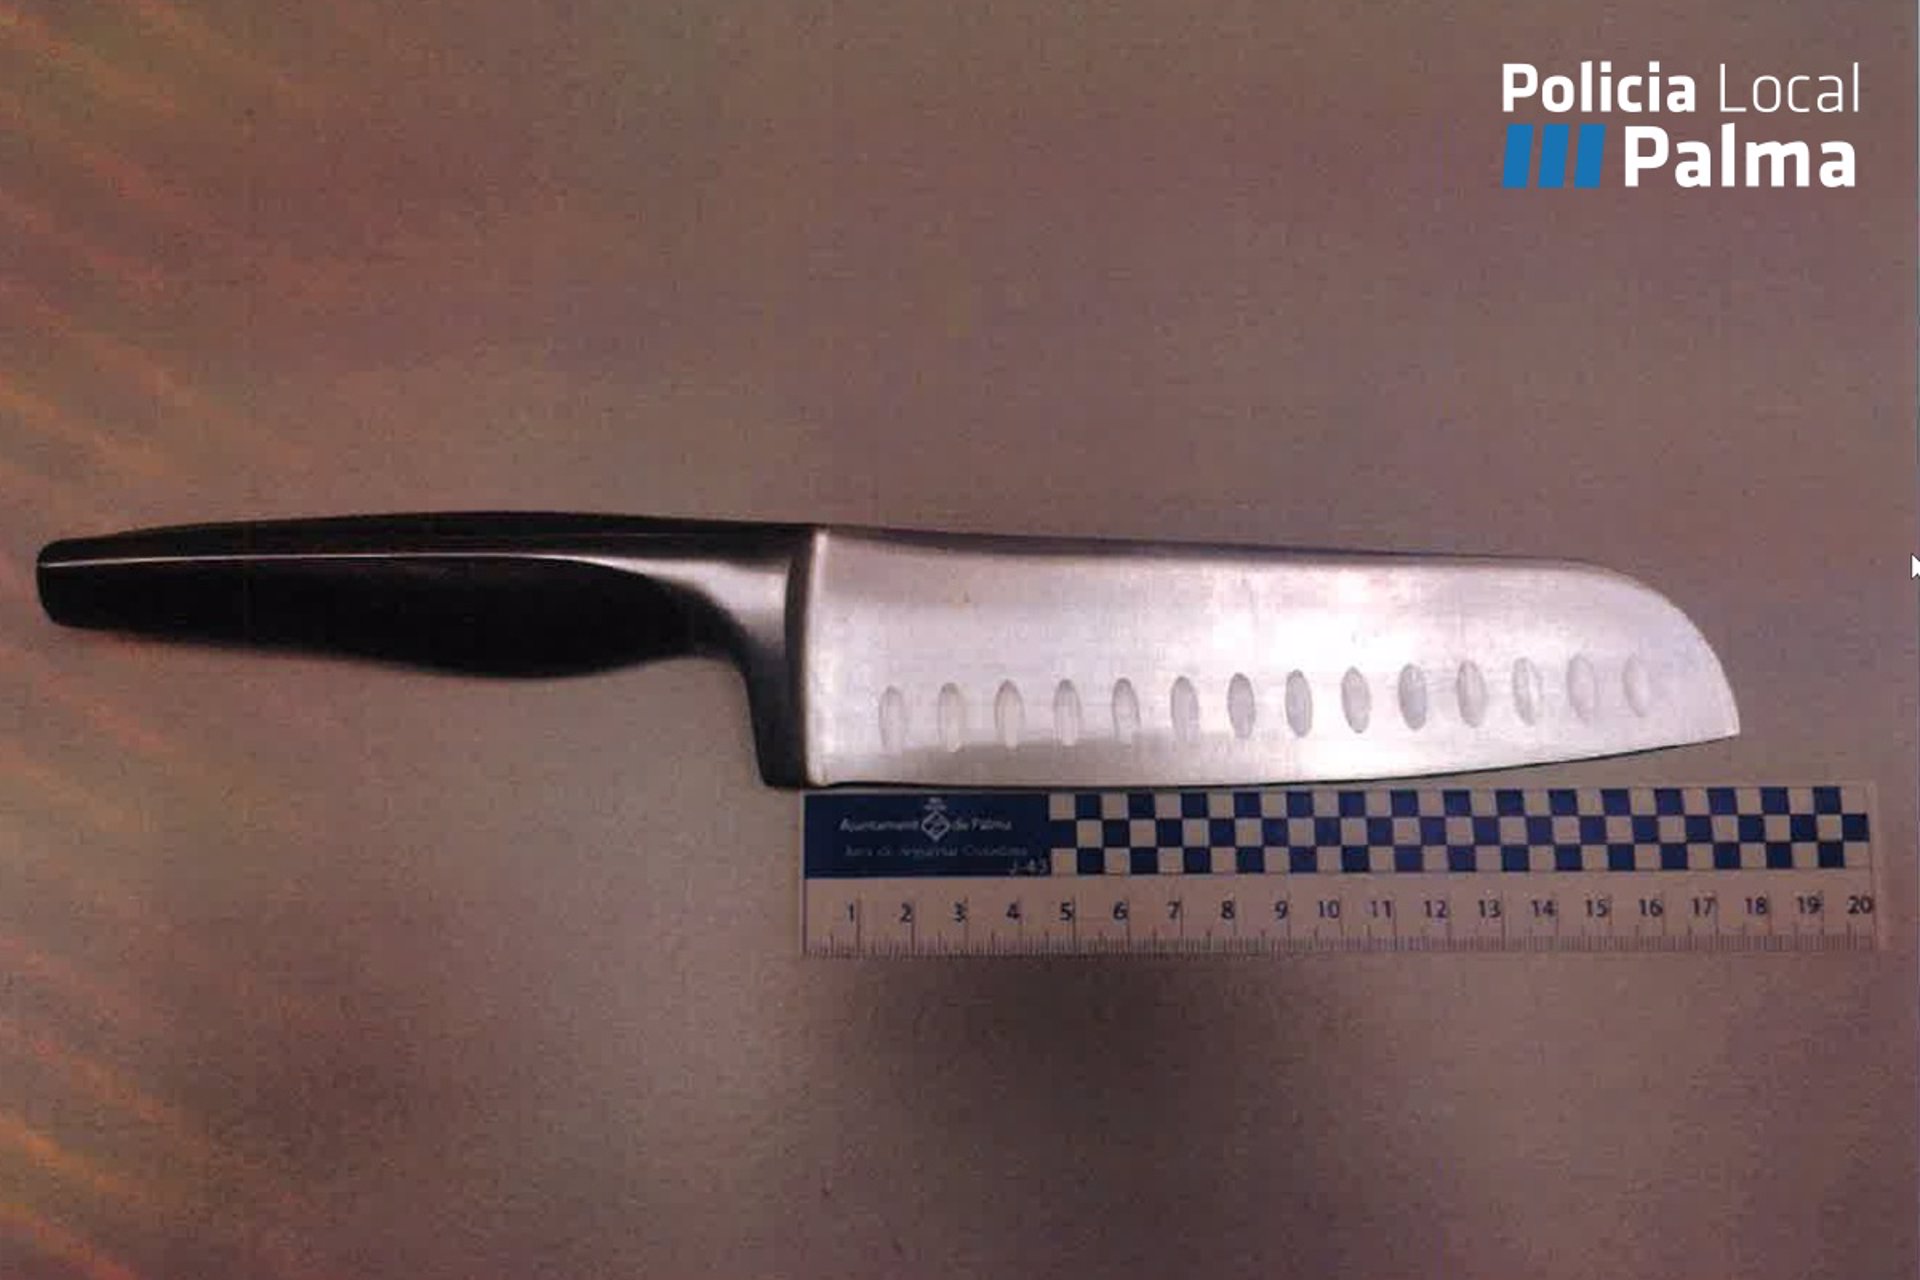 Cuchillo de 18 centímetros de hoja incautado - POLICÍA LOCAL DE PALMA